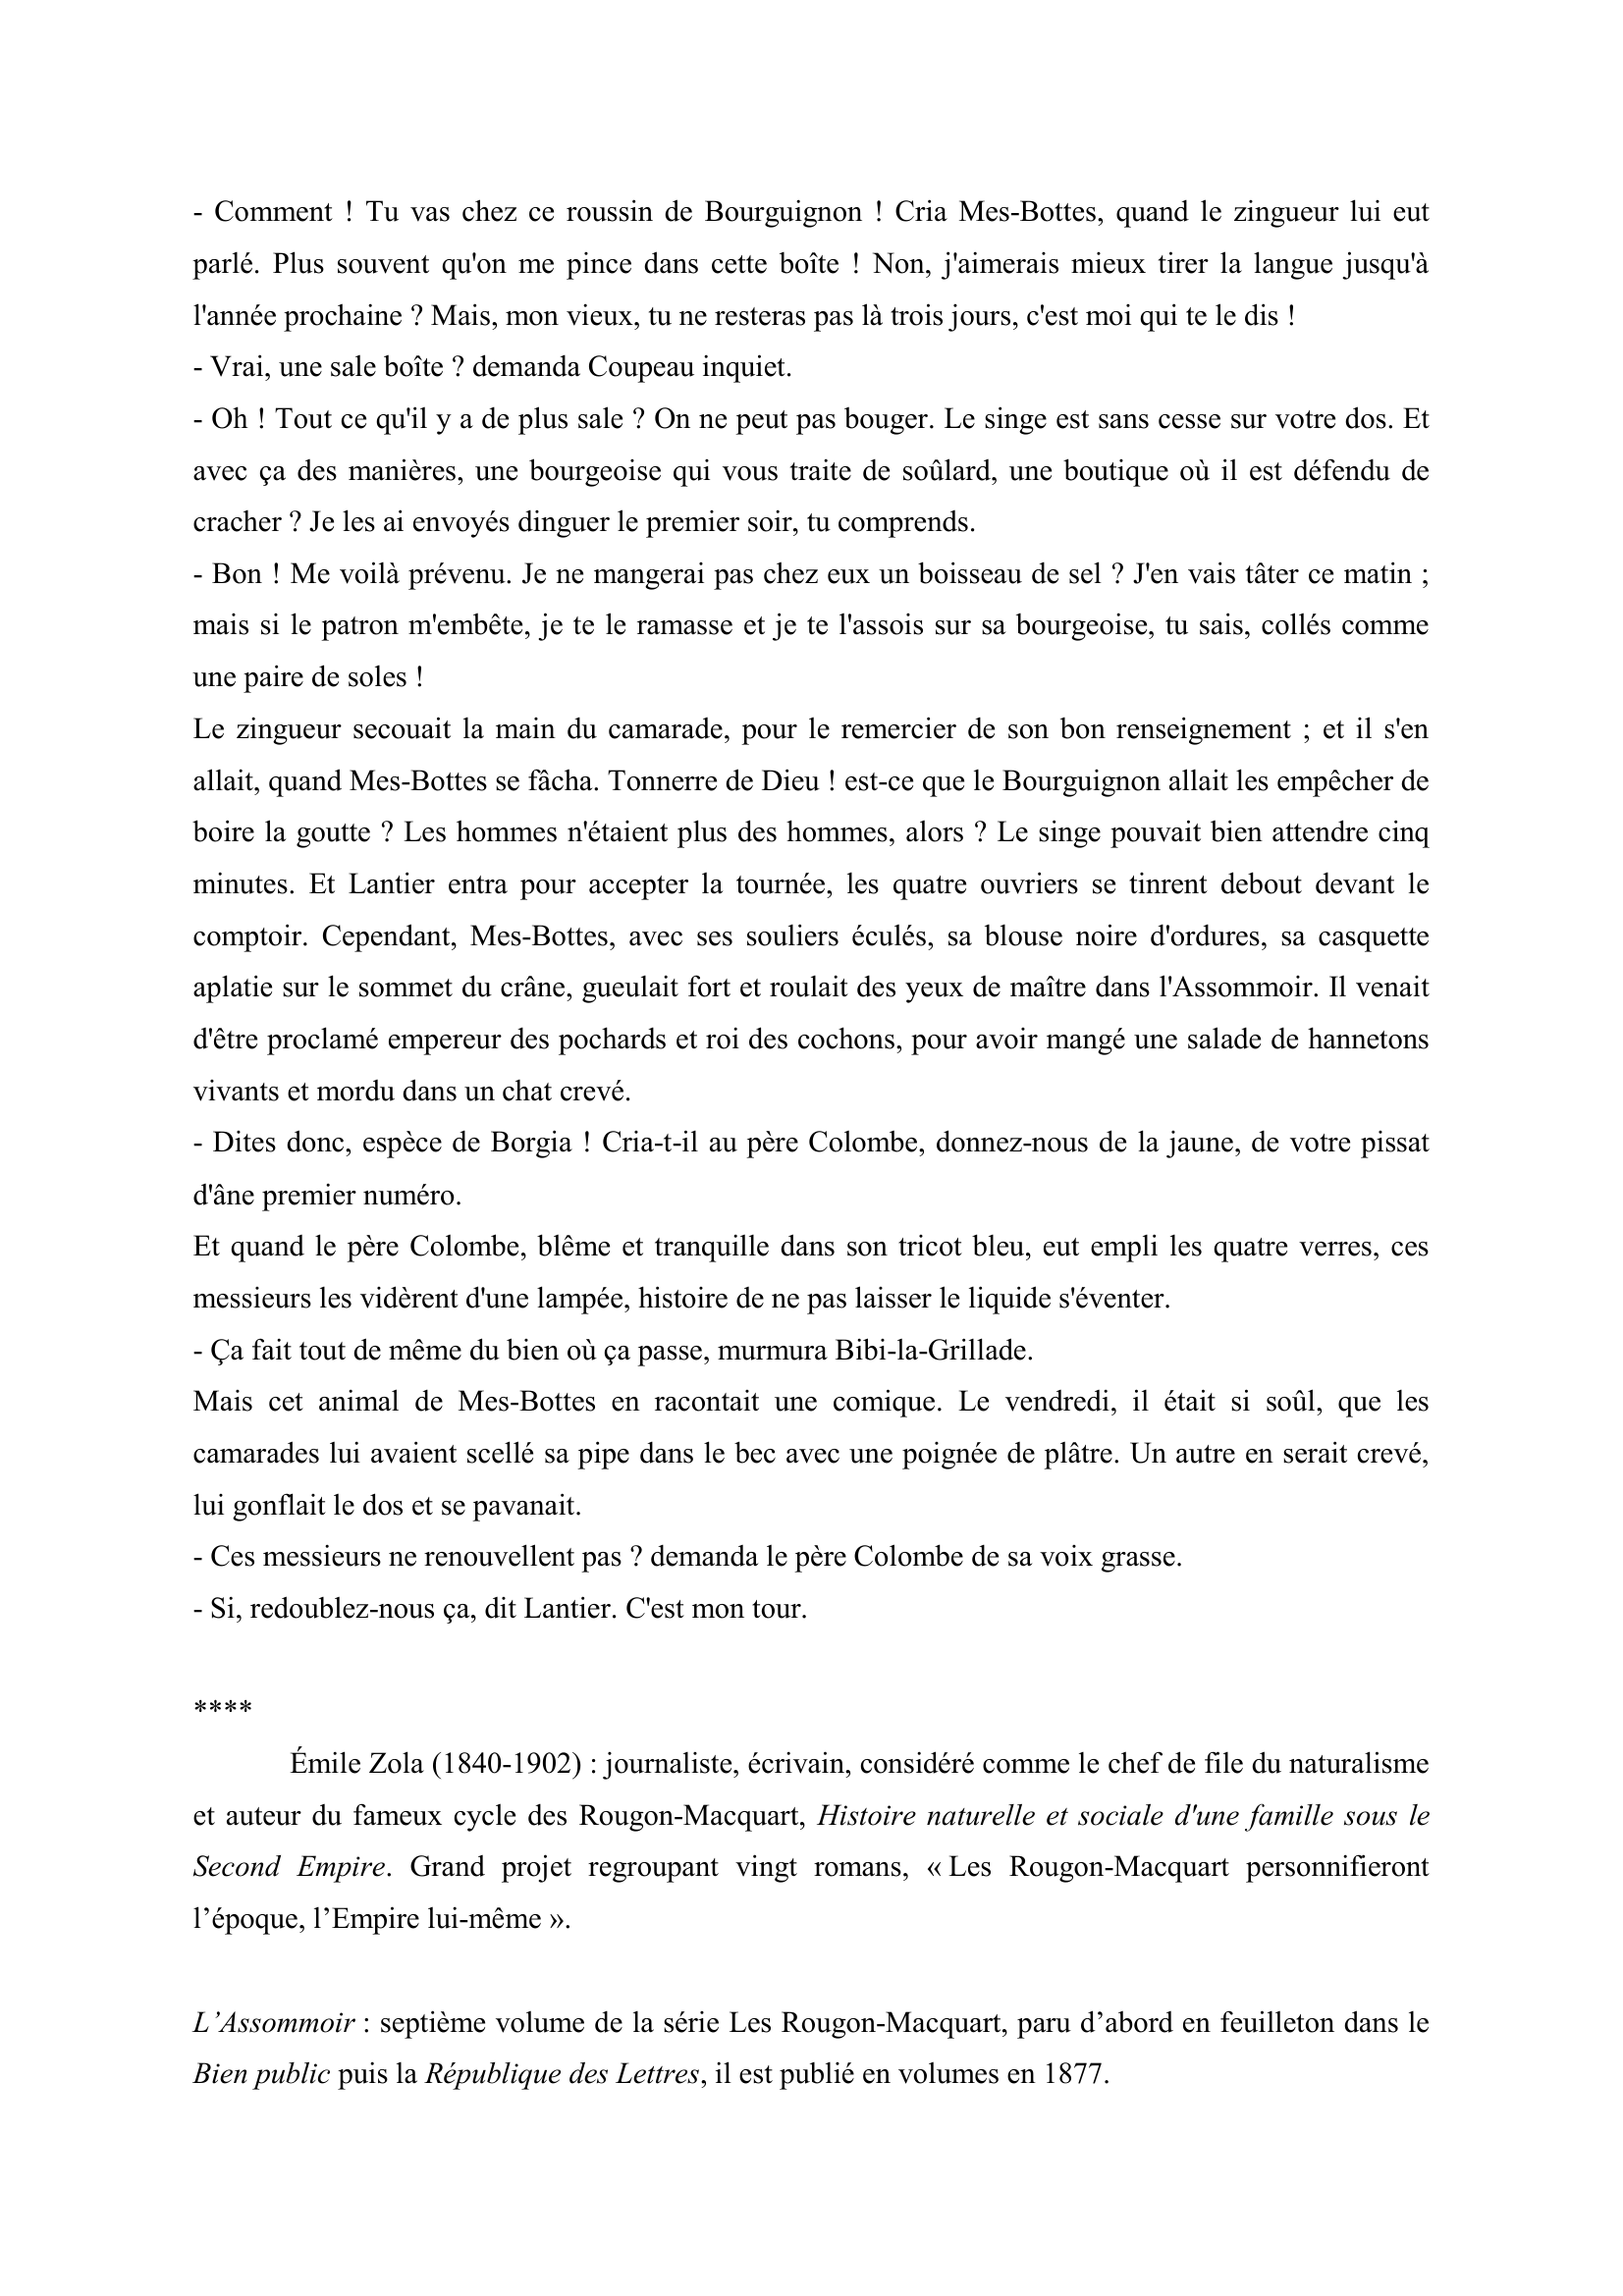 Prévisualisation du document Émile Zola, L’Assommoir, chapitre VIII (commentaire composé de français)